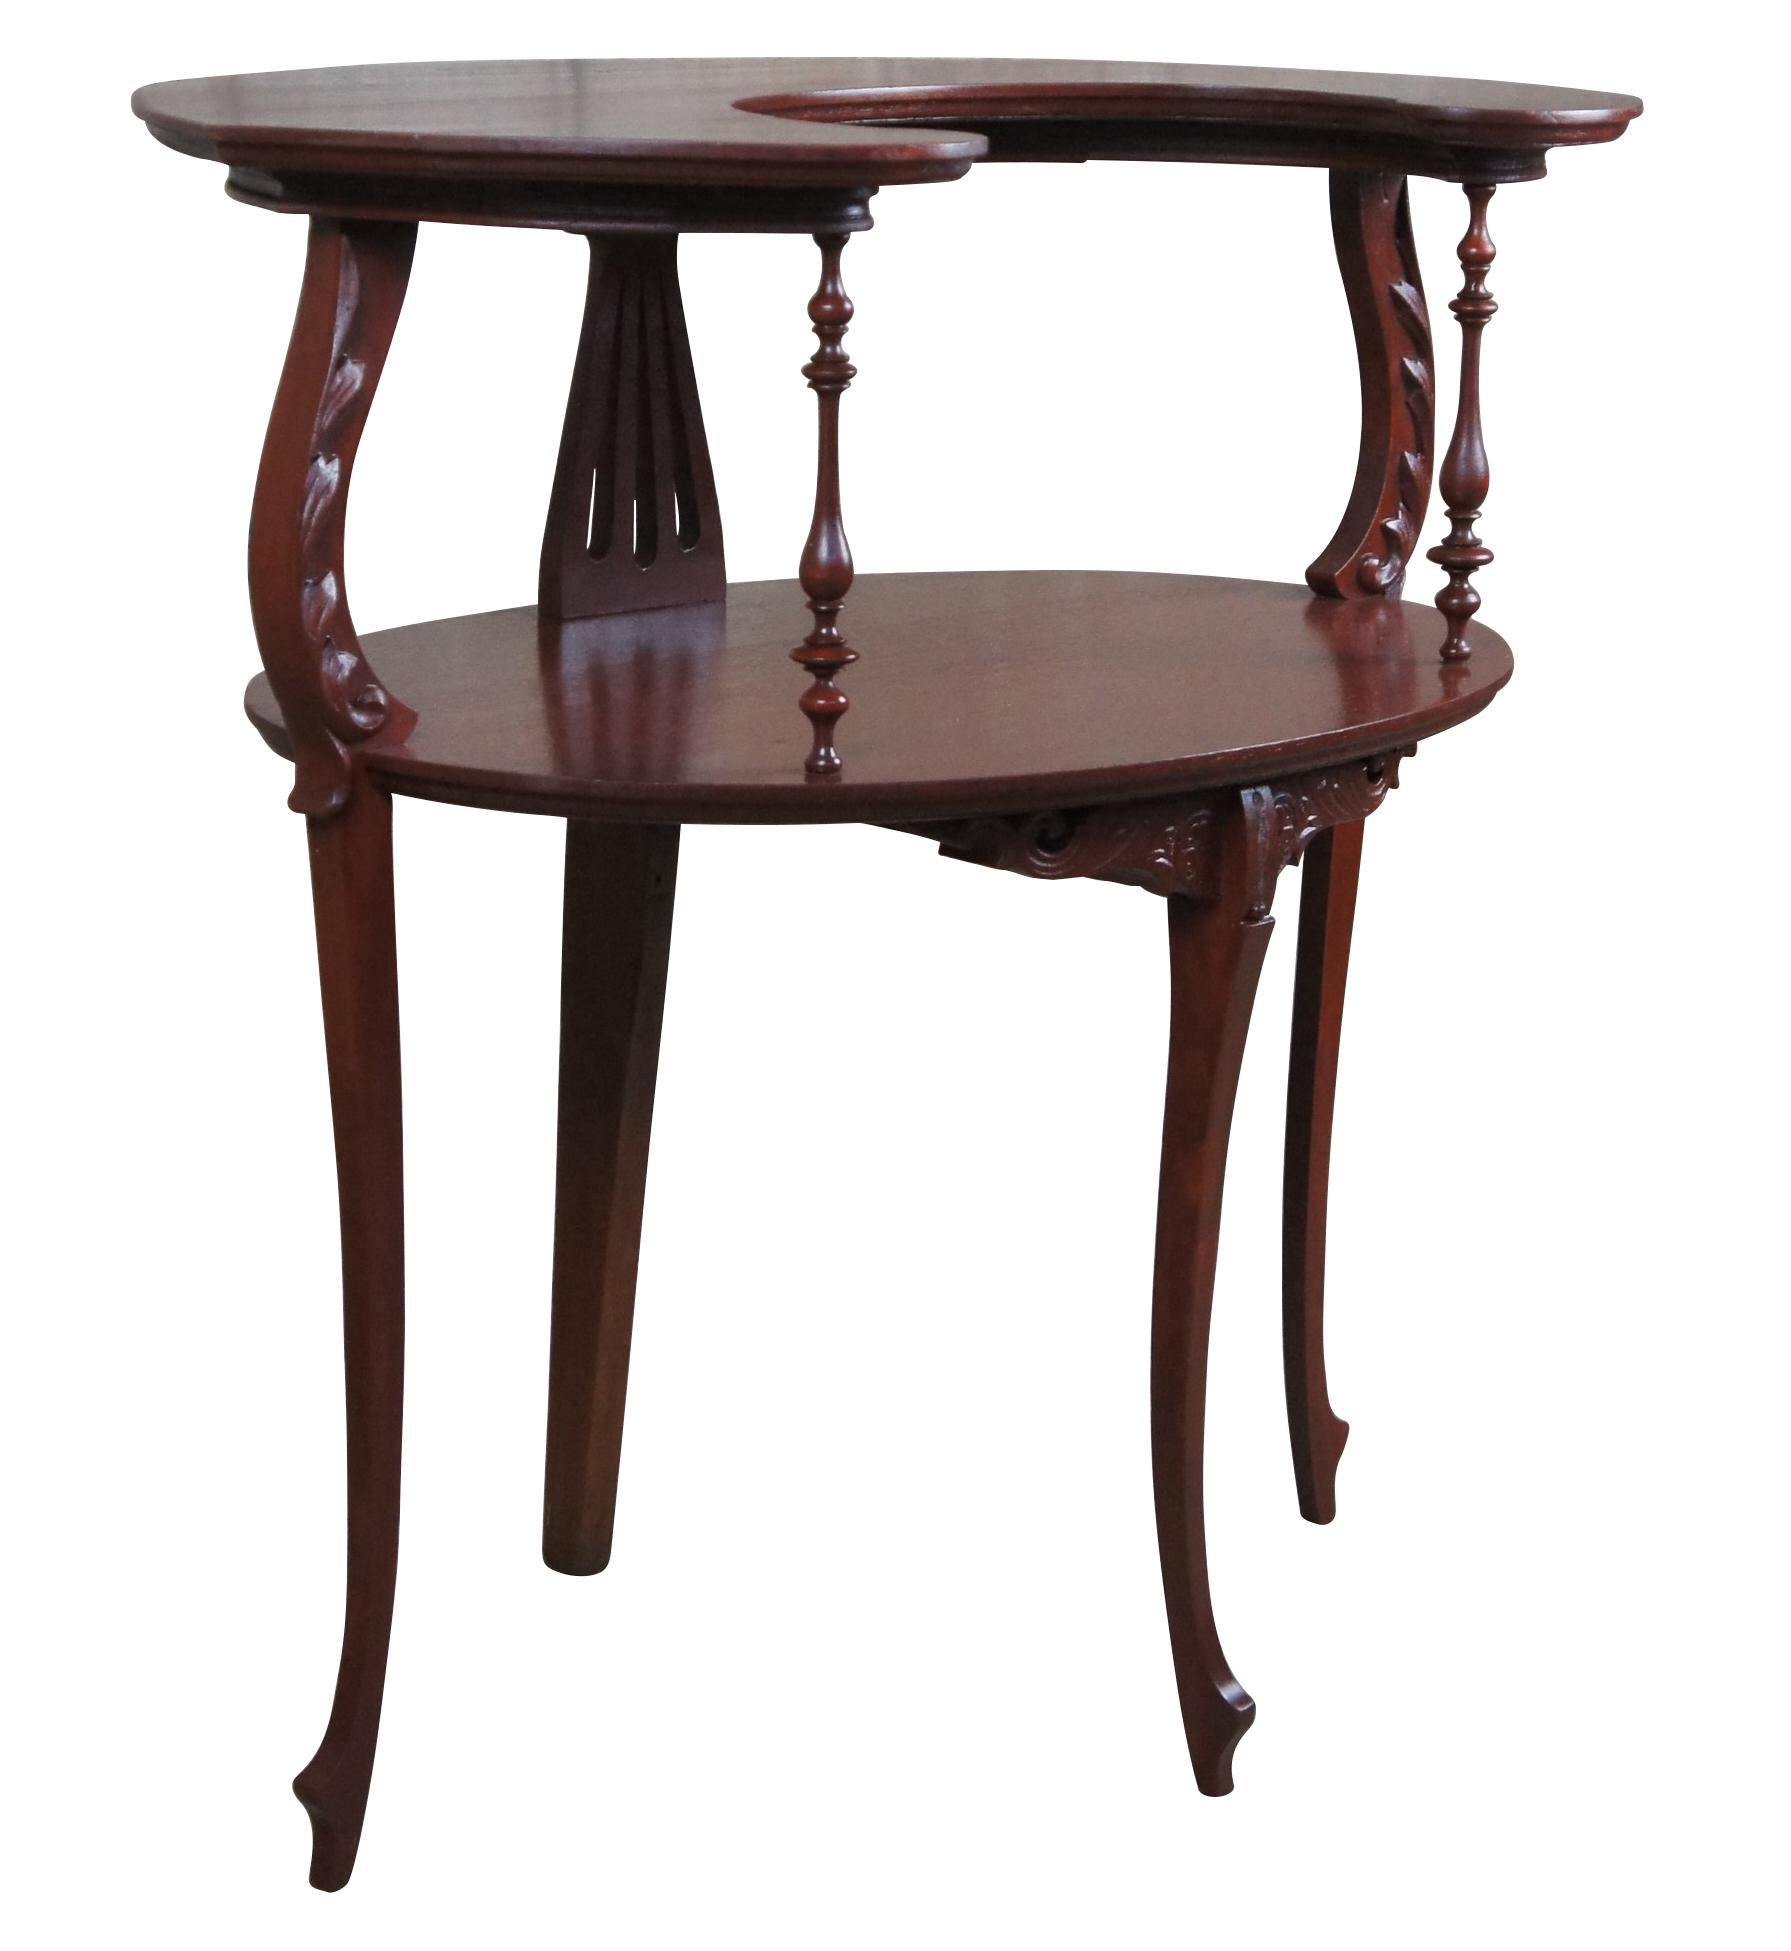 Eleganter ovaler Stufentisch aus dem frühen 20. Jahrhundert.  In der viktorianischen Ära wurden diese kleinen Tische meist zum Servieren des Desserts verwendet.  Der Tisch ist aus Mahagoni gefertigt und hat eine halbmondförmige oder demilune Platte,